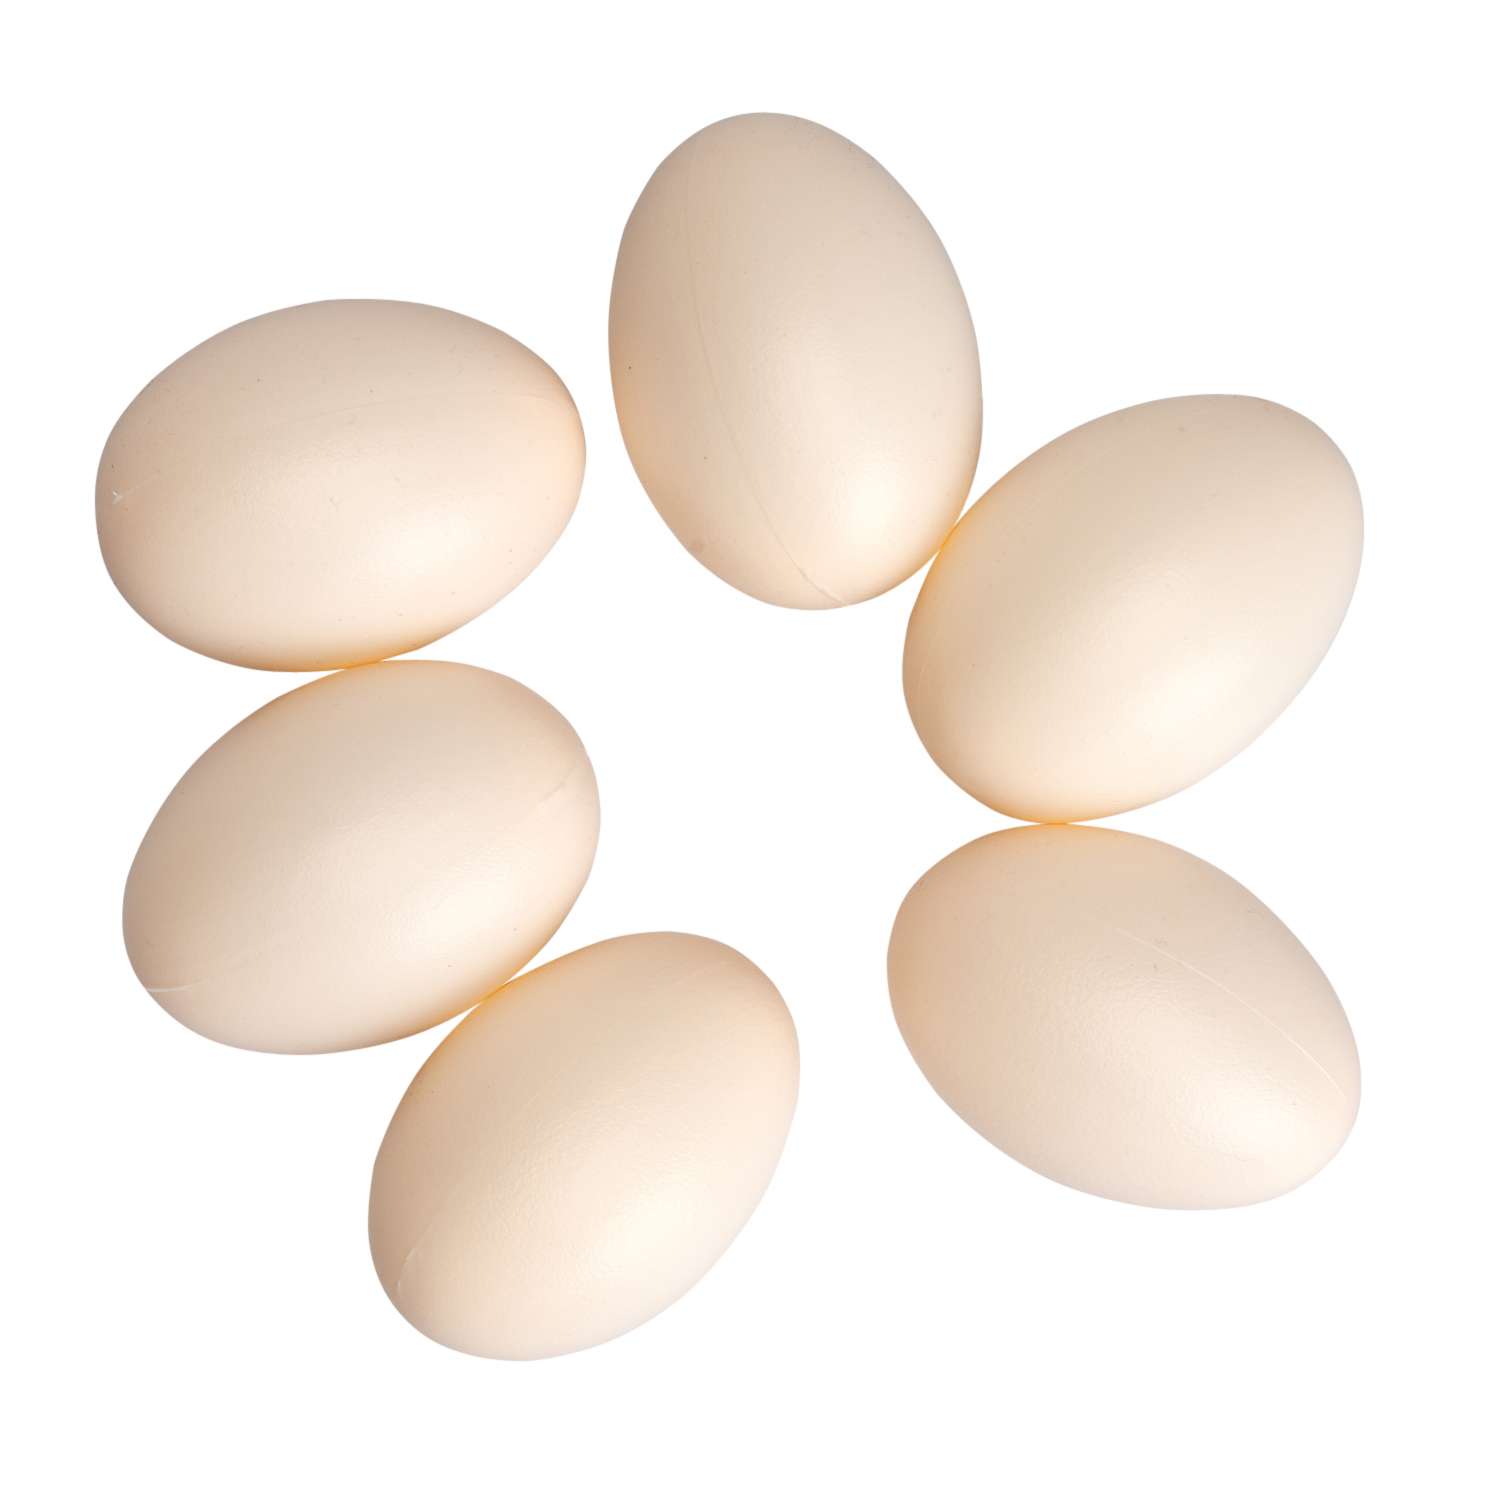 Игровой набор EstaBella Яйцо диетическое белое 6 шт. - фото 2